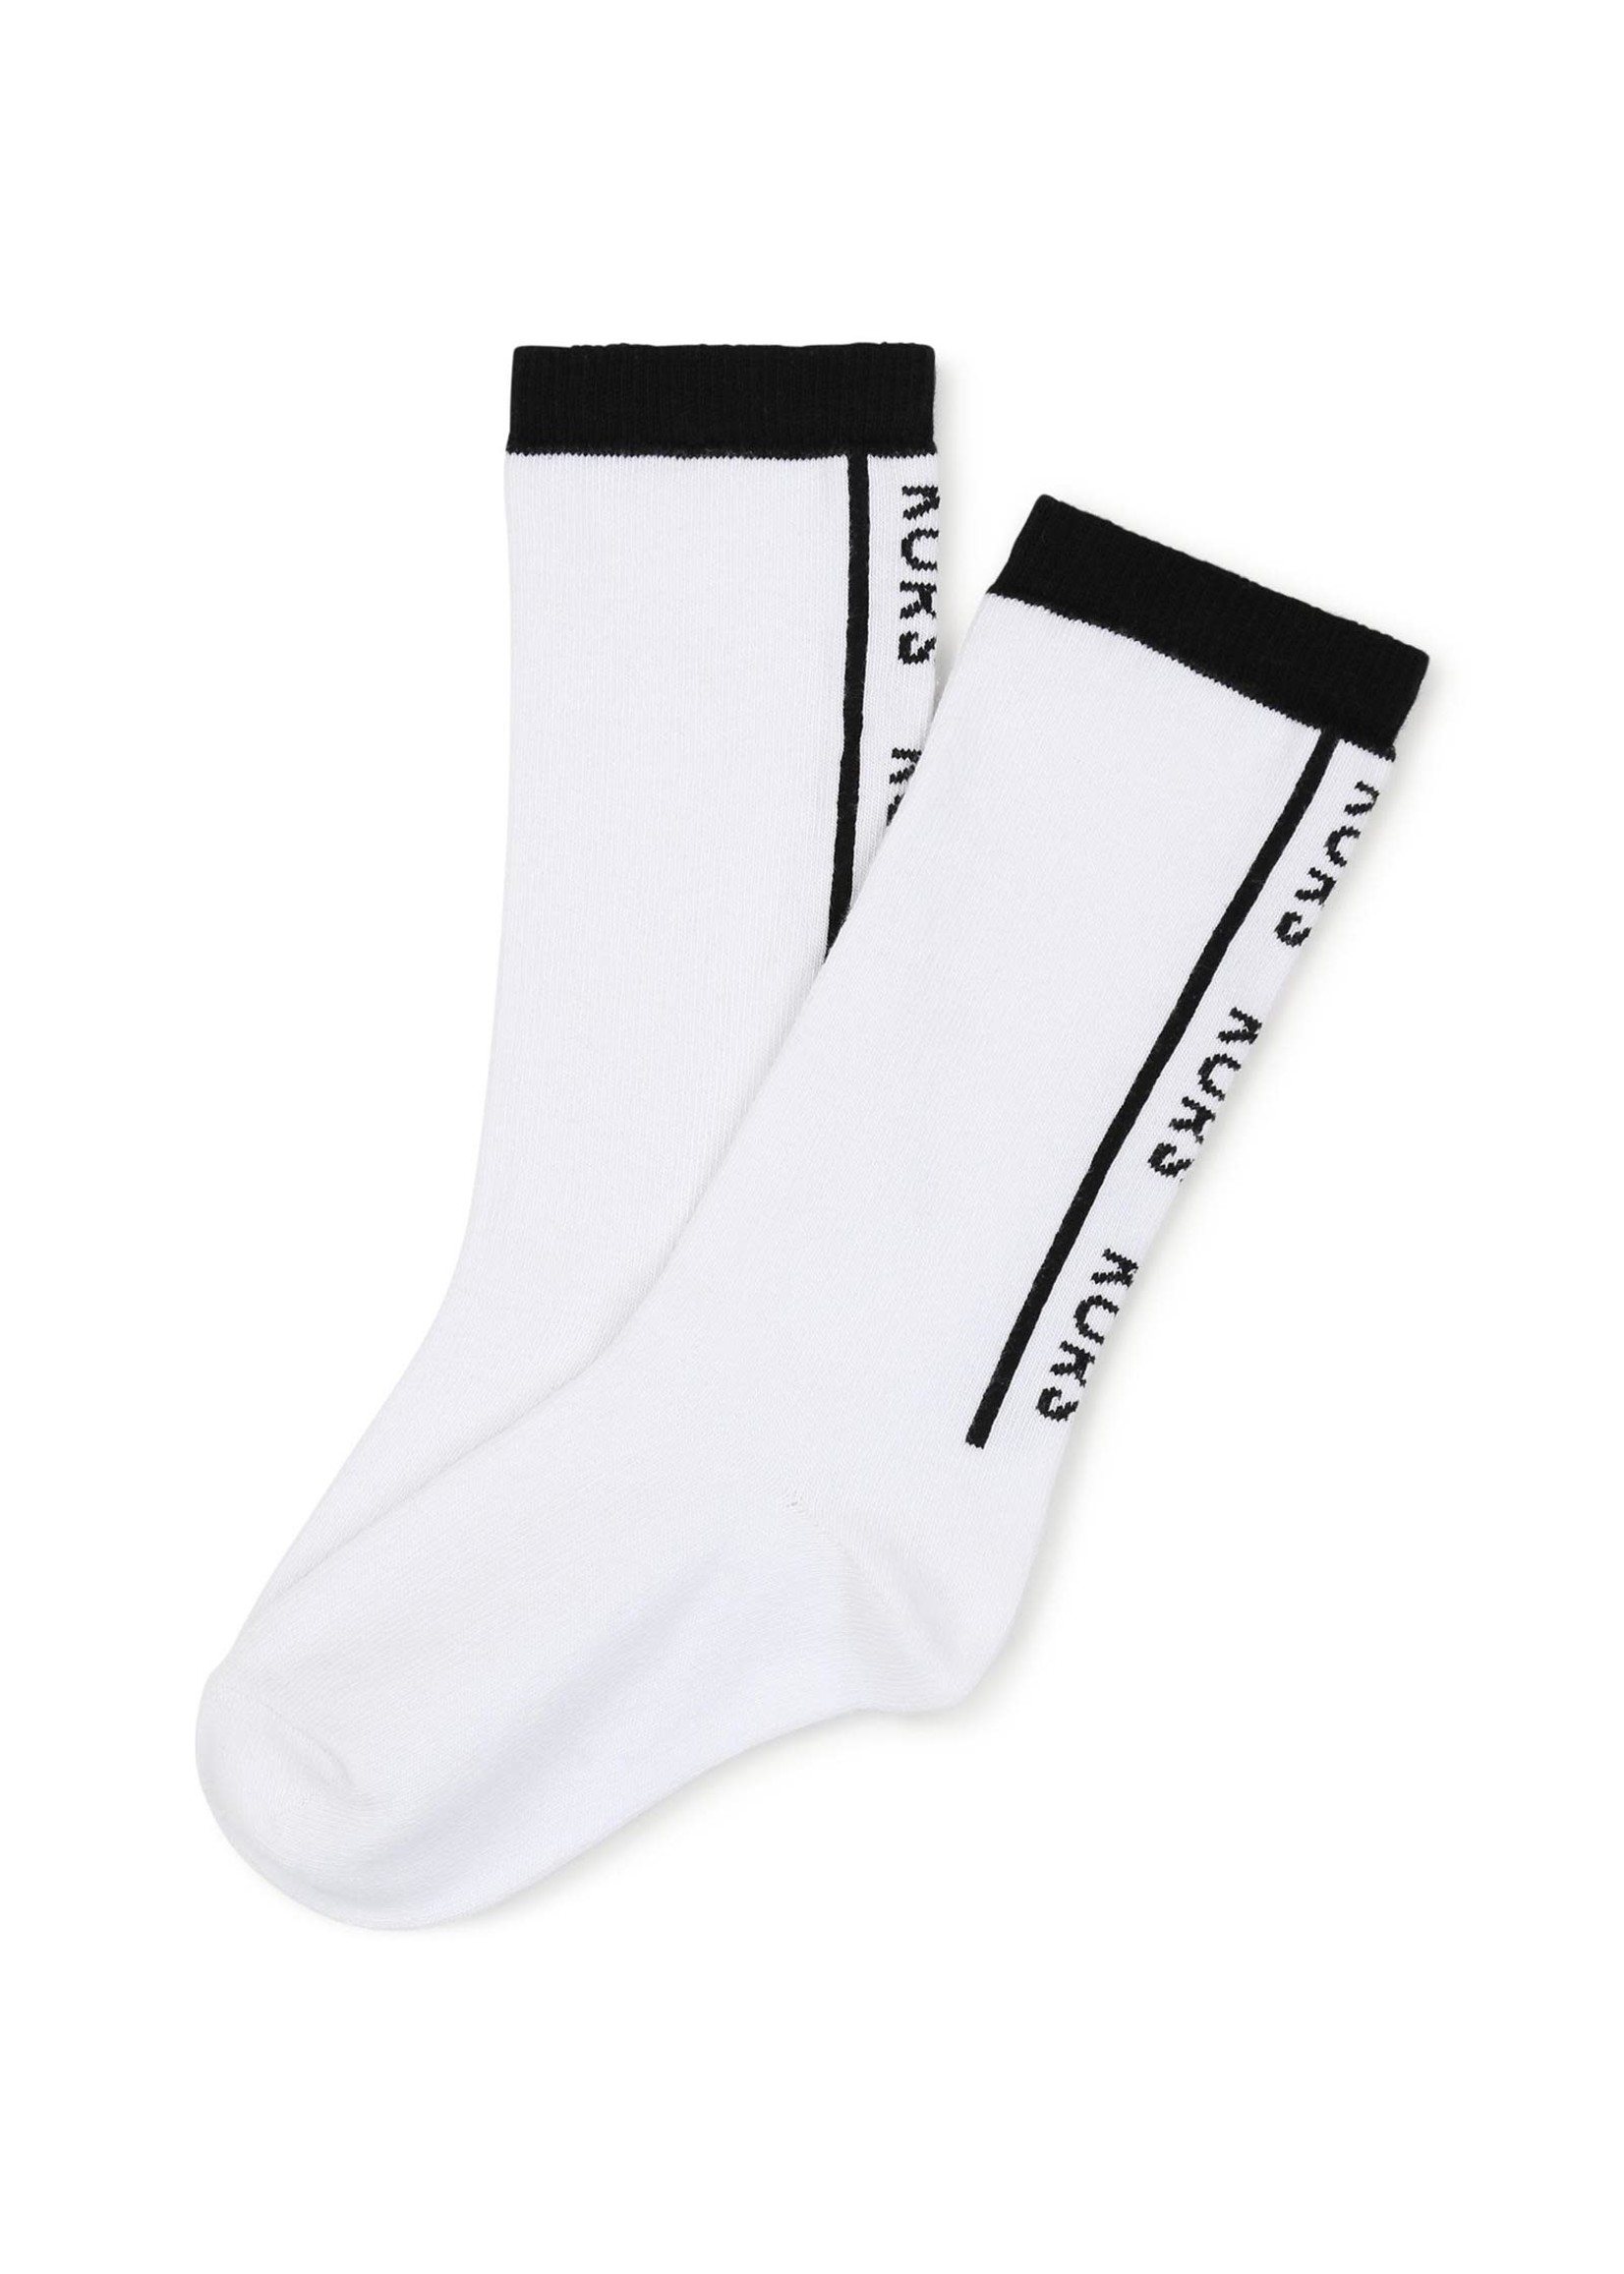 Michael Kors Michael Kors Socks wit/zwart